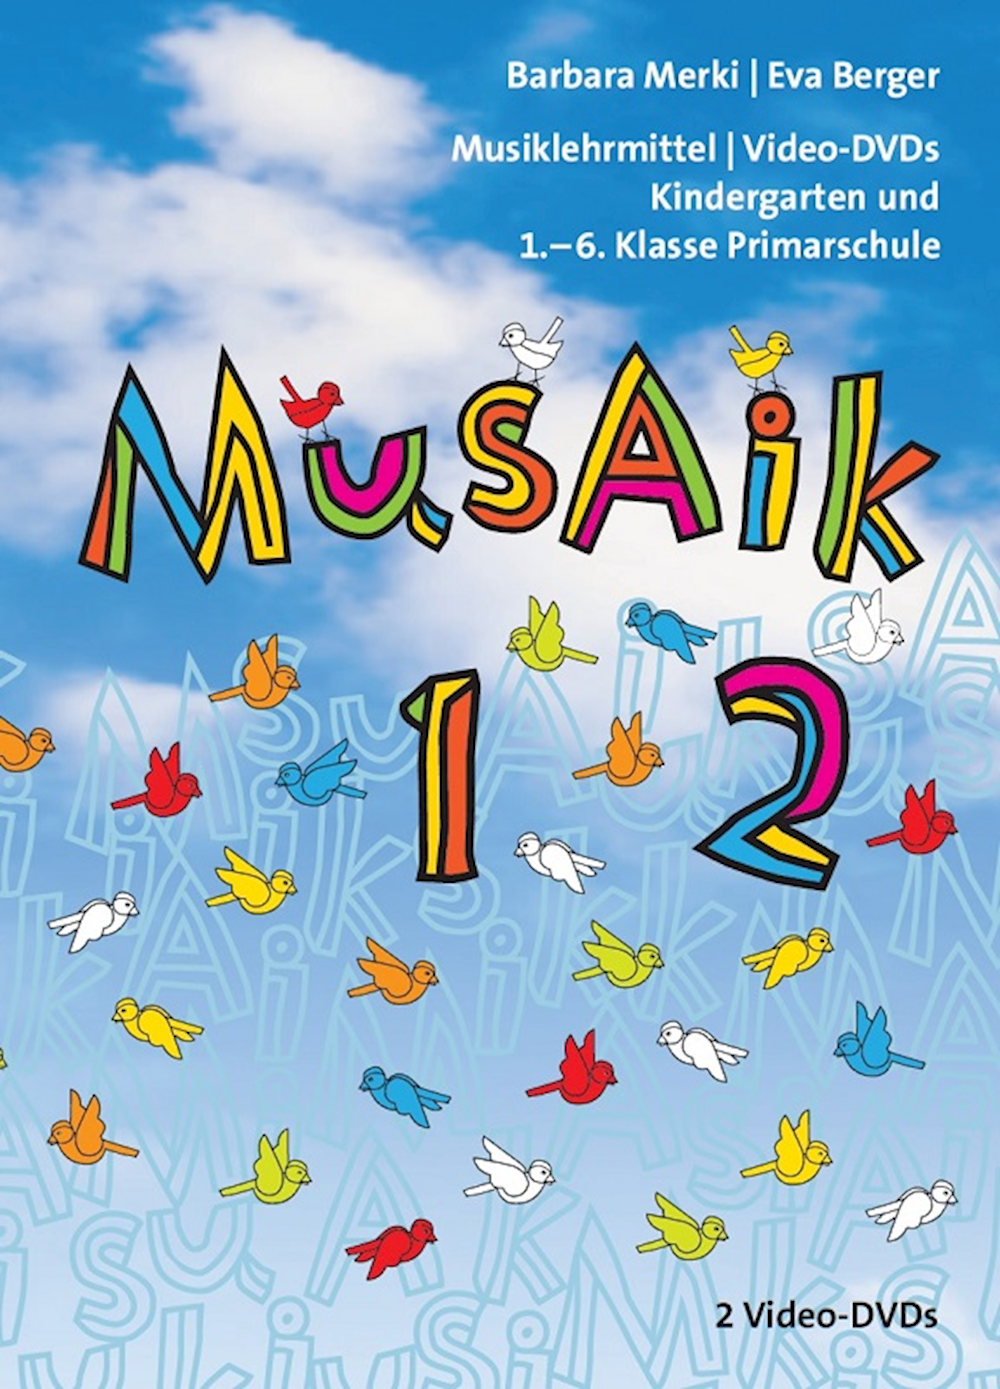 MusAik 1/2 DVD